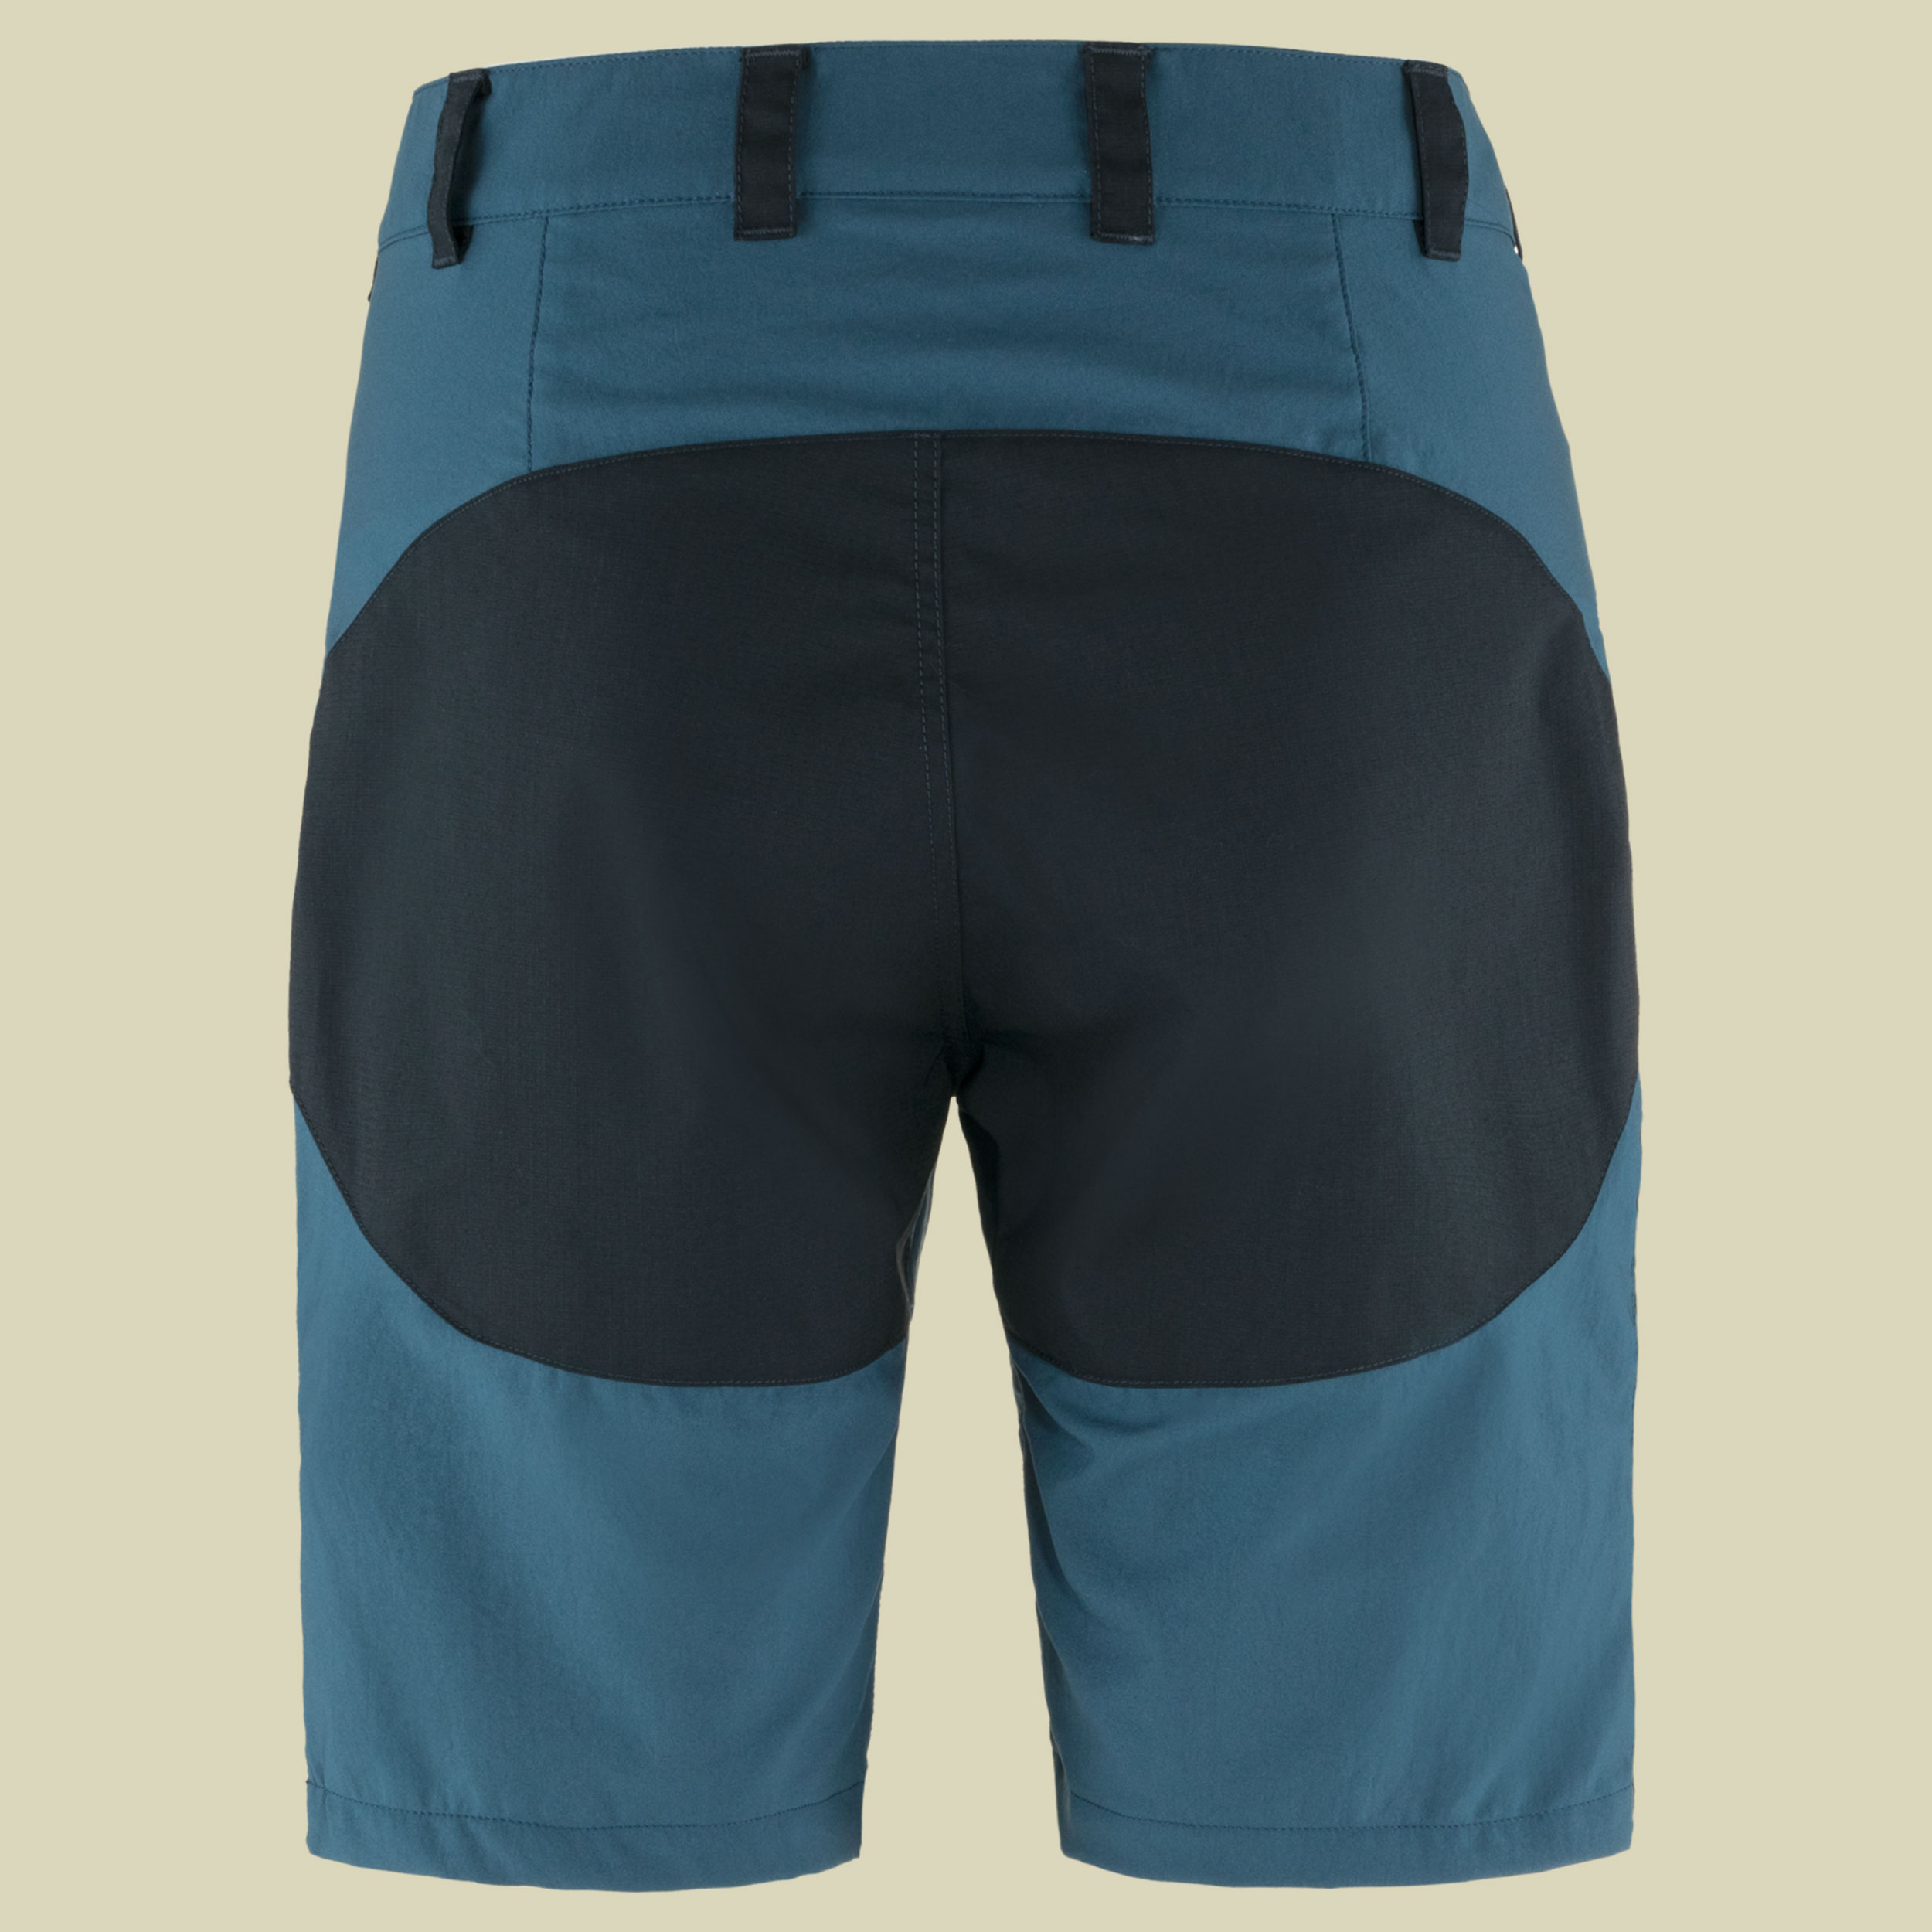 Abisko Midsummer Shorts Women Größe 40 Farbe indigo blue-dark navy